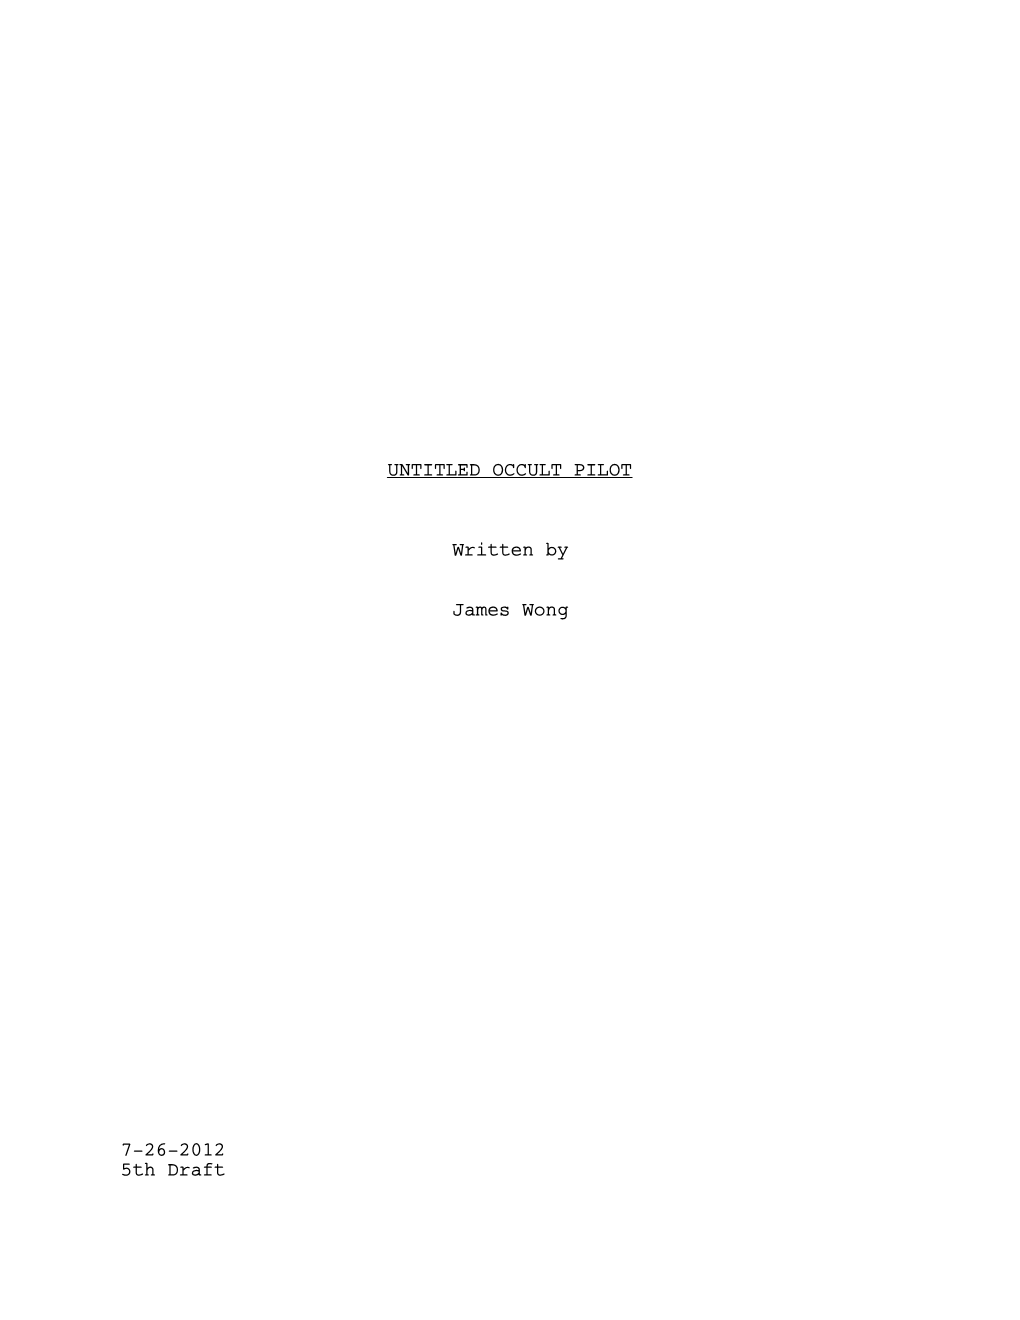 OCCULT PILOT Written by James Wong 7-26-2012 5Th Draft